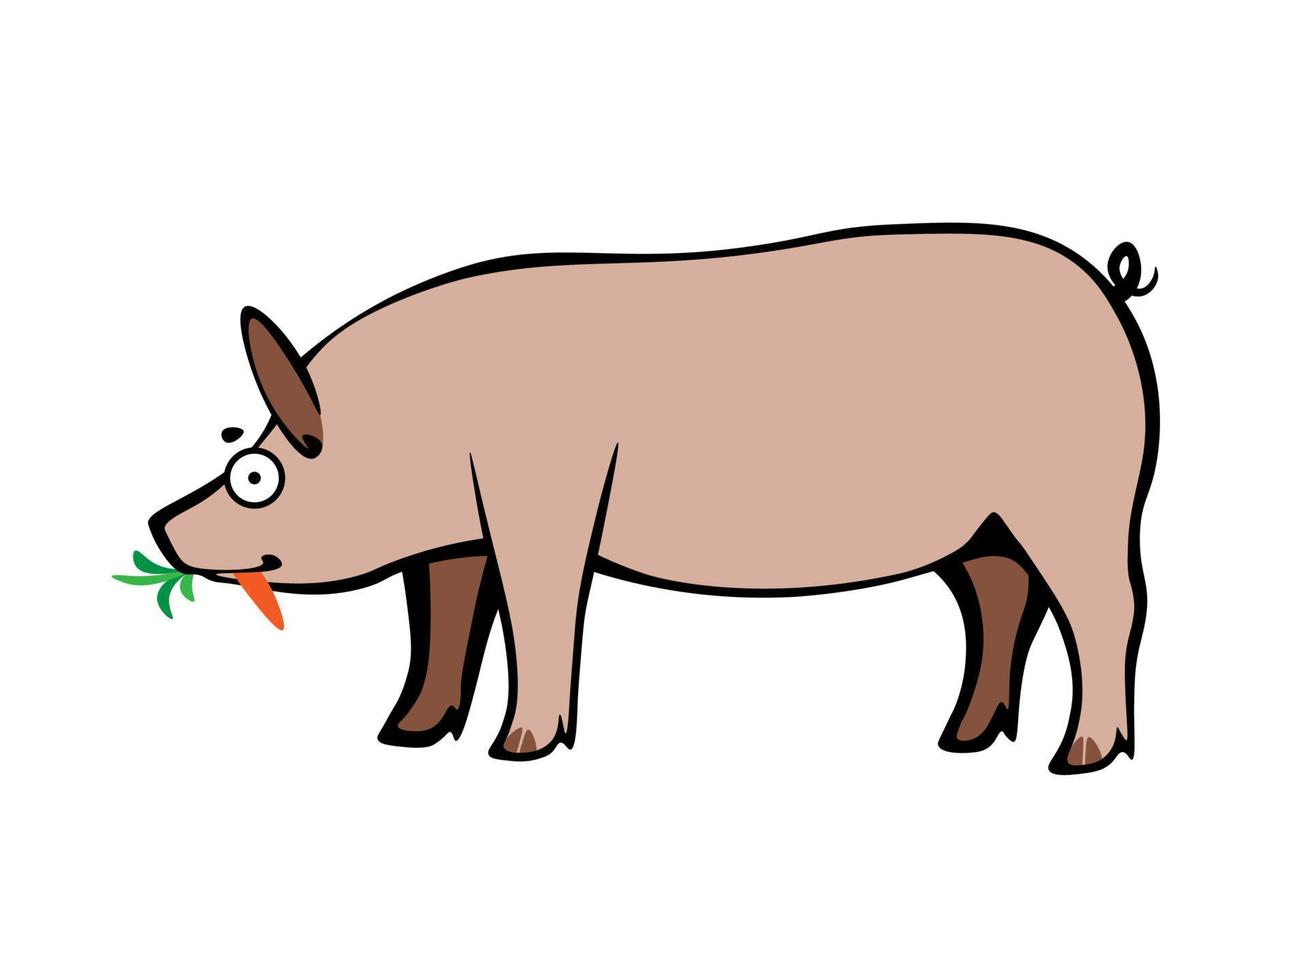 caricatura divertida cerdo domesticado descuidado comiendo zanahoria fresca vector